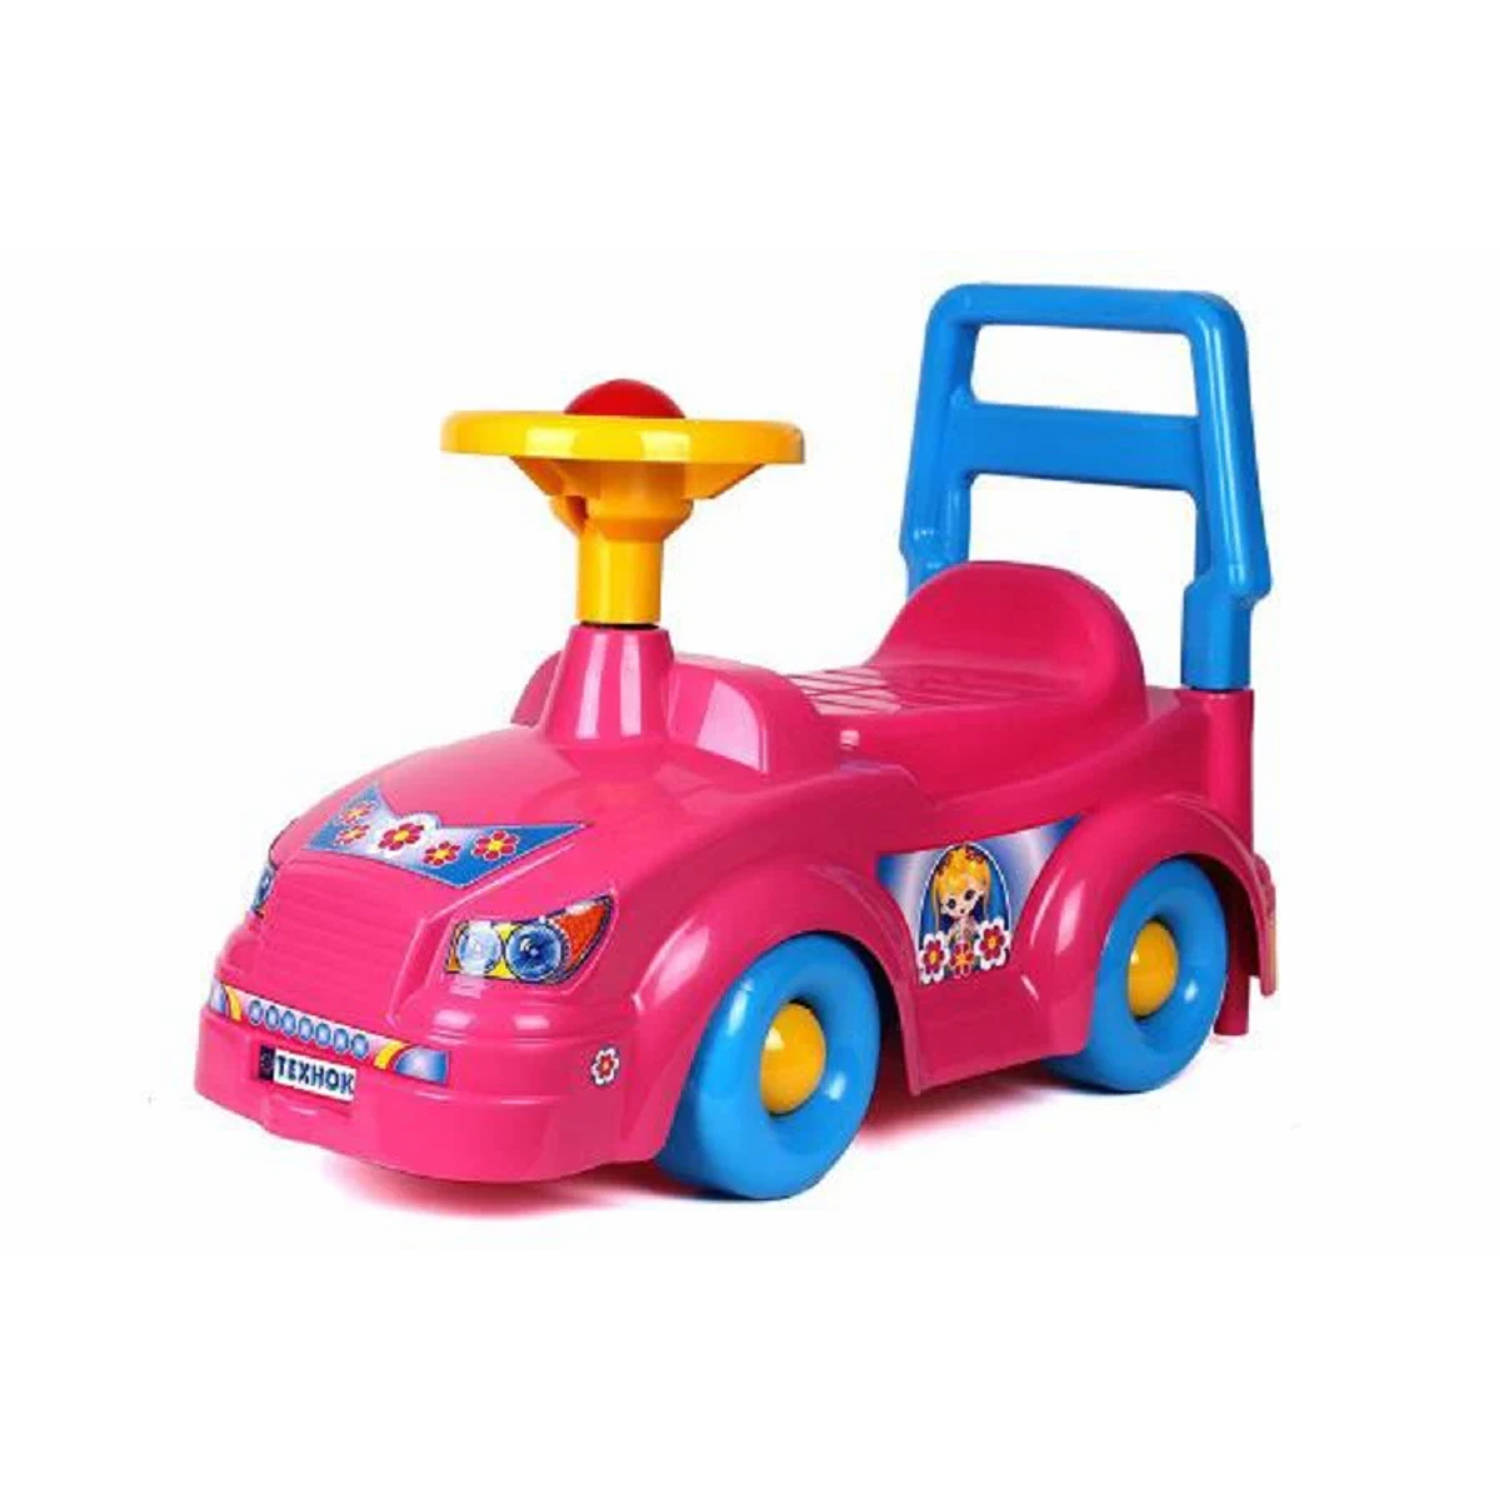 Ride-on TechnoK Prinsess loopauto met claxon en rugsteun Roze Kinderauto